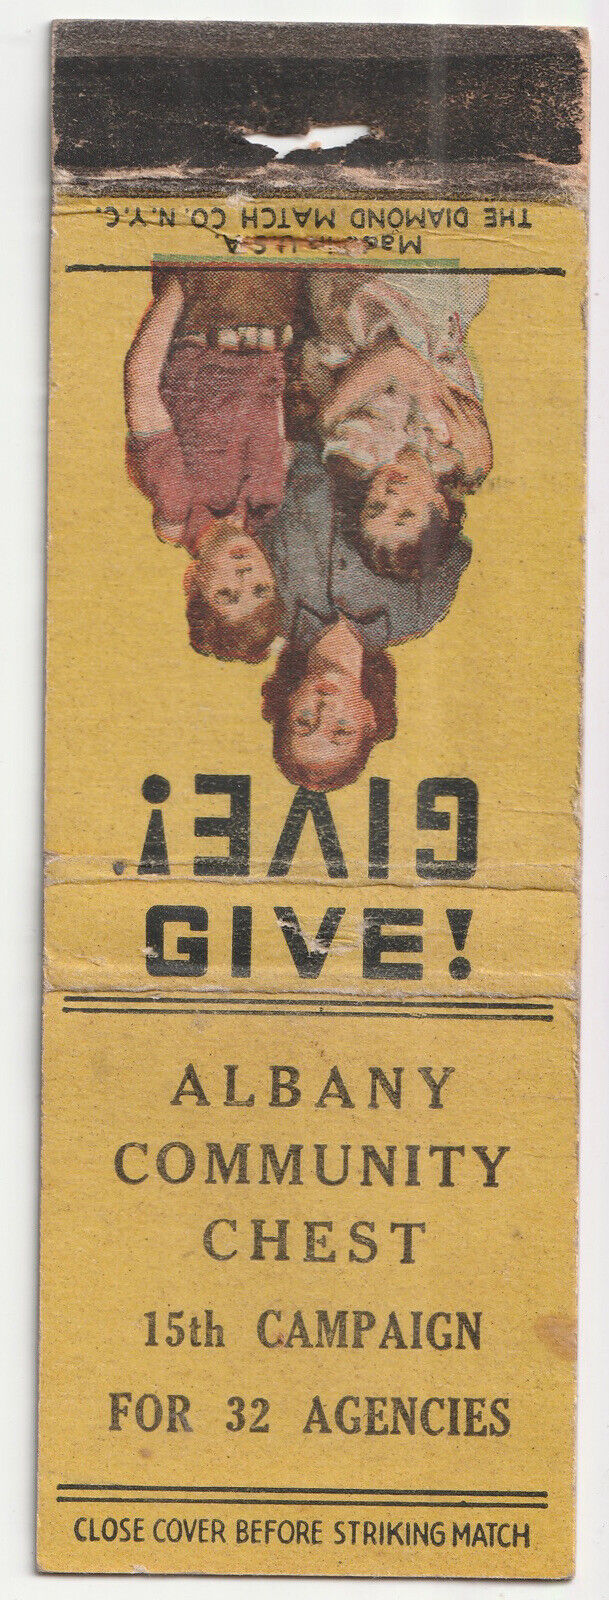 1940s-1950s Albany Community Chest Charity Organization New York Matchbook VTG Без бренда - фотография #2